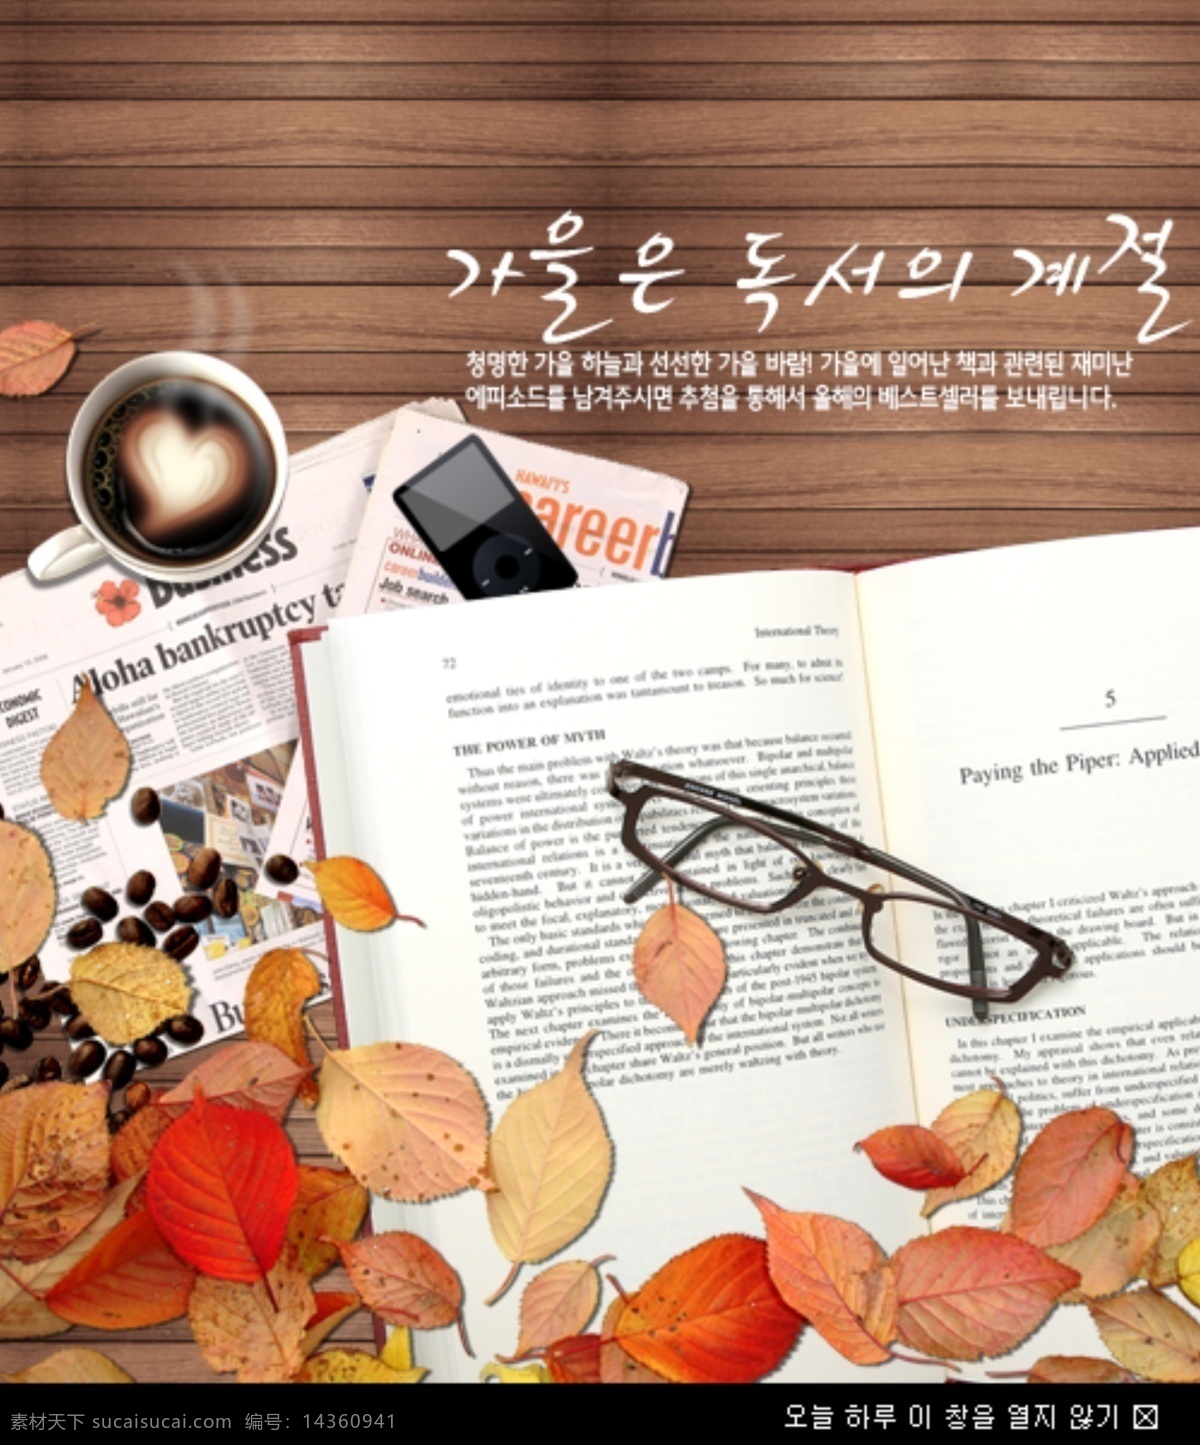 淘宝 秋天 促销 海报 模版 报纸 韩文字体 咖啡 落叶 手机 书籍 眼镜 咖啡条纹背景 原创设计 原创淘宝设计